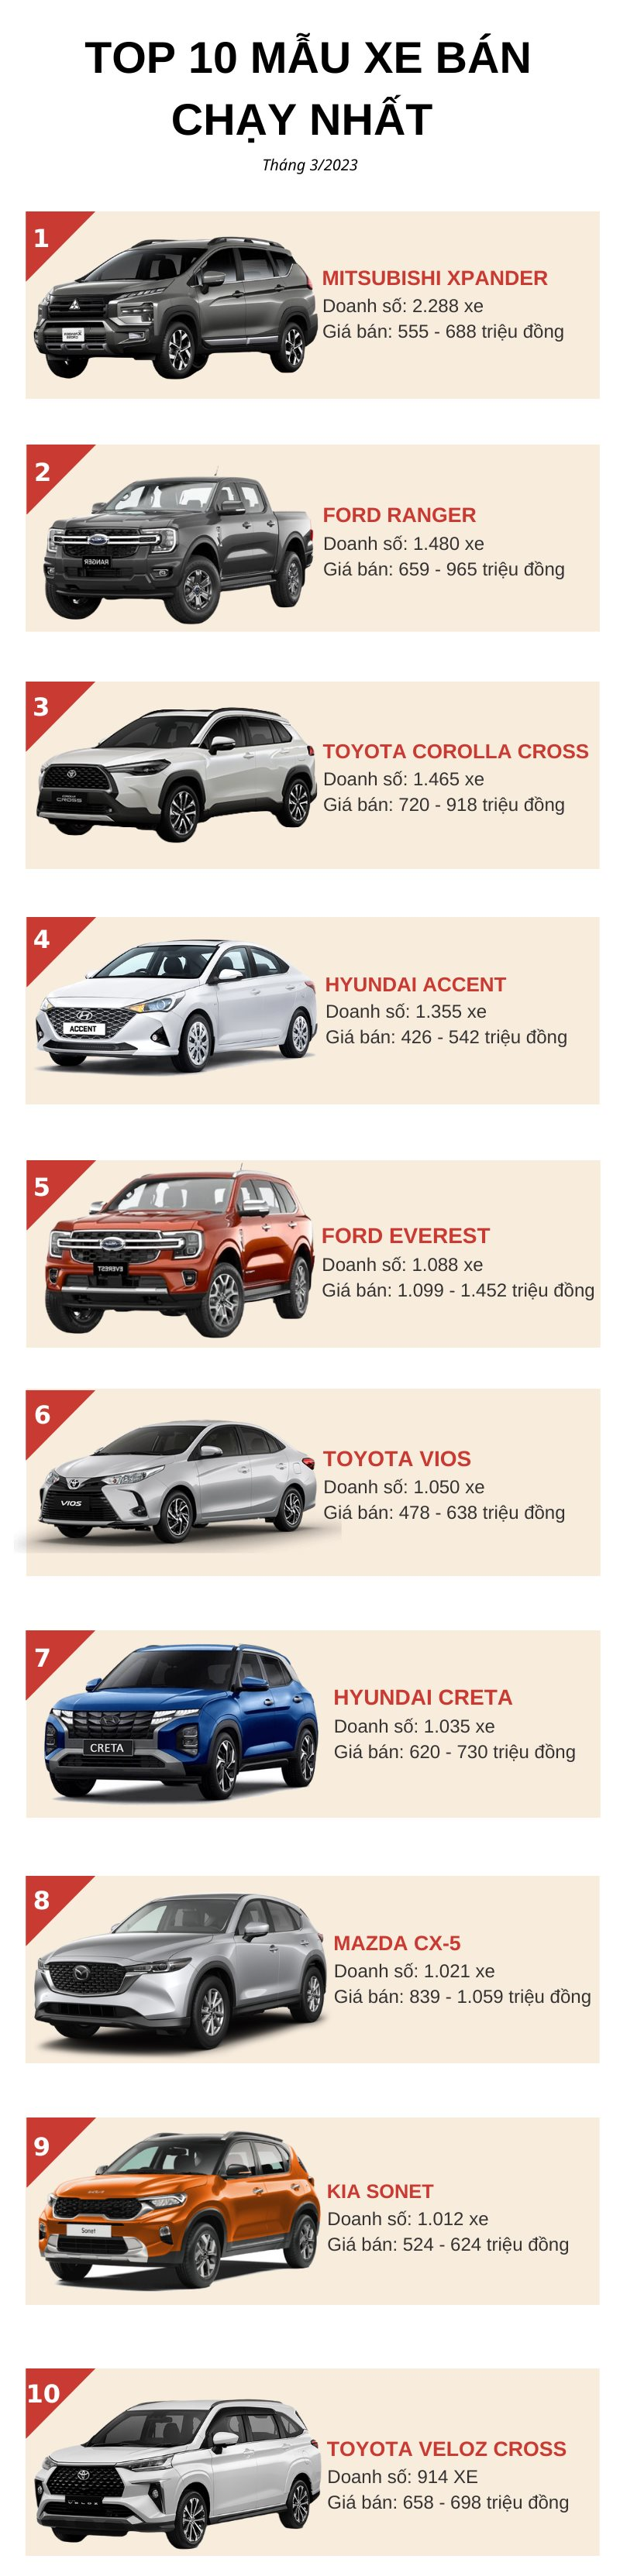 Top 10 ô tô bán chạy nhất tháng 3/2023: Mitsubishi Xpander lên đỉnh, một cái tên bất ngờ xuất hiện - Ảnh 2.